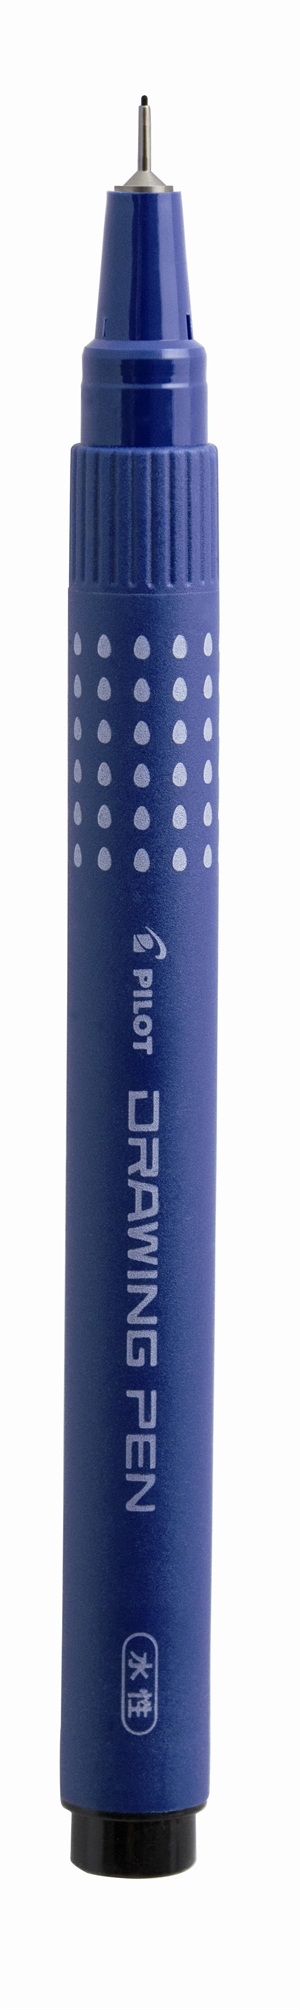 Pilot Filzstift m/Kappe Drawing Pen 0,1mm schwarz